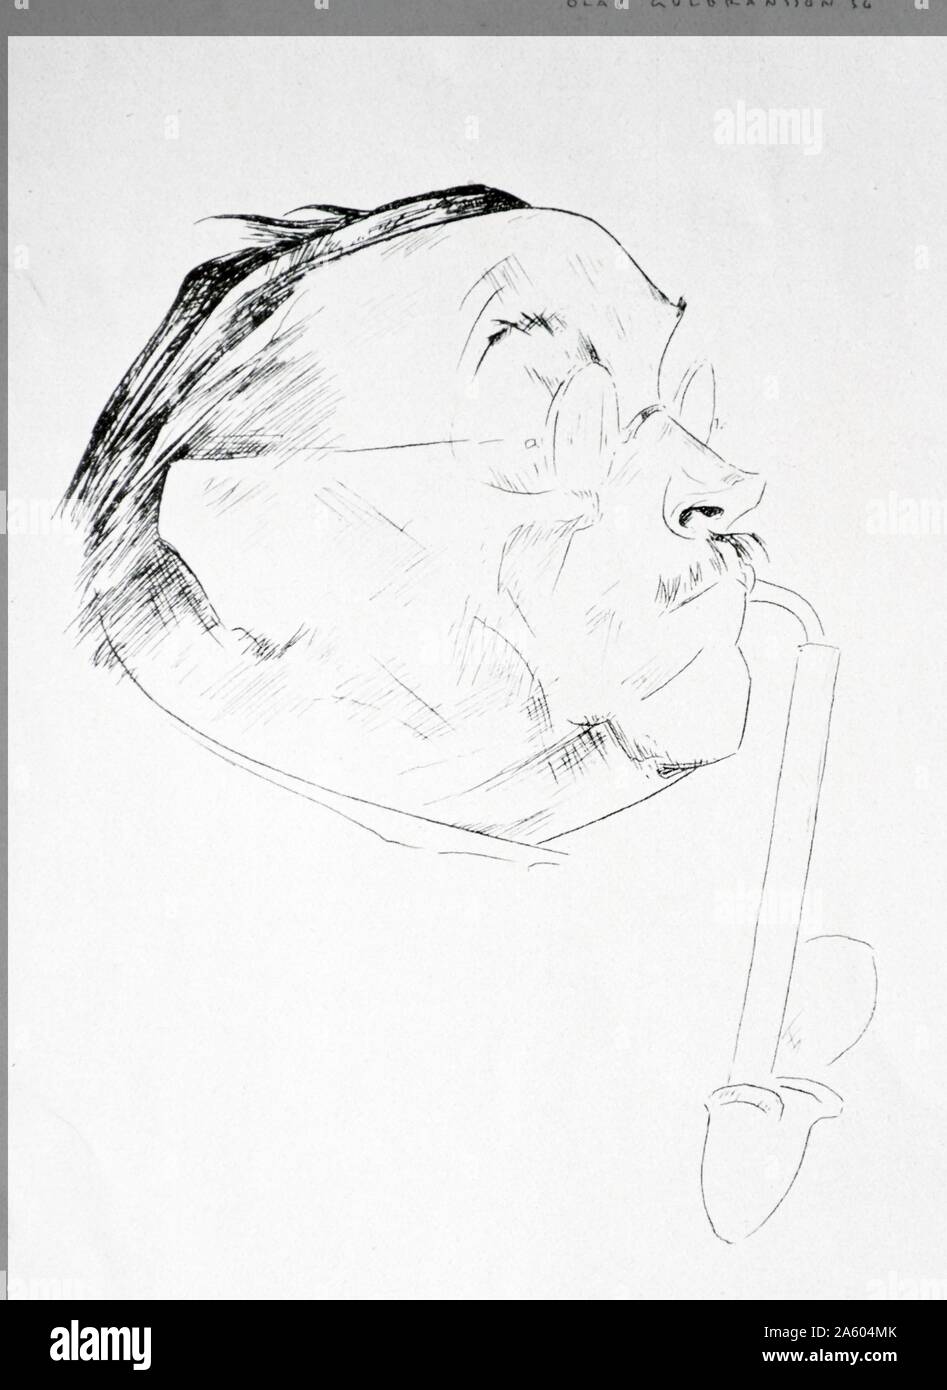 Ritratto di Ludwig Thoma dall'Olaf Gulbransson Leonhard (1873-1958), artista norvegese, pittore e disegnatore. Egli è probabilmente meglio conosciuto per le sue caricature e illustrazioni. Nel 1902 si trasferì in Germania per lavorare per la rivista satirica Simplicissimus di Monaco di Baviera. Gulbransson collaborato attivamente con i nazisti. Durante la II Guerra Mondiale, dopo il suo paese era occupata dai tedeschi, ha prodotto caricature contro gli alleati, in particolare nei confronti di Winston Churchill. Nel 1941 è stato realizzato un membro onorario della società di artisti berlinesi e nel 1942 dell'Accademia di Belle Arti di Vienna. 1937 Foto Stock